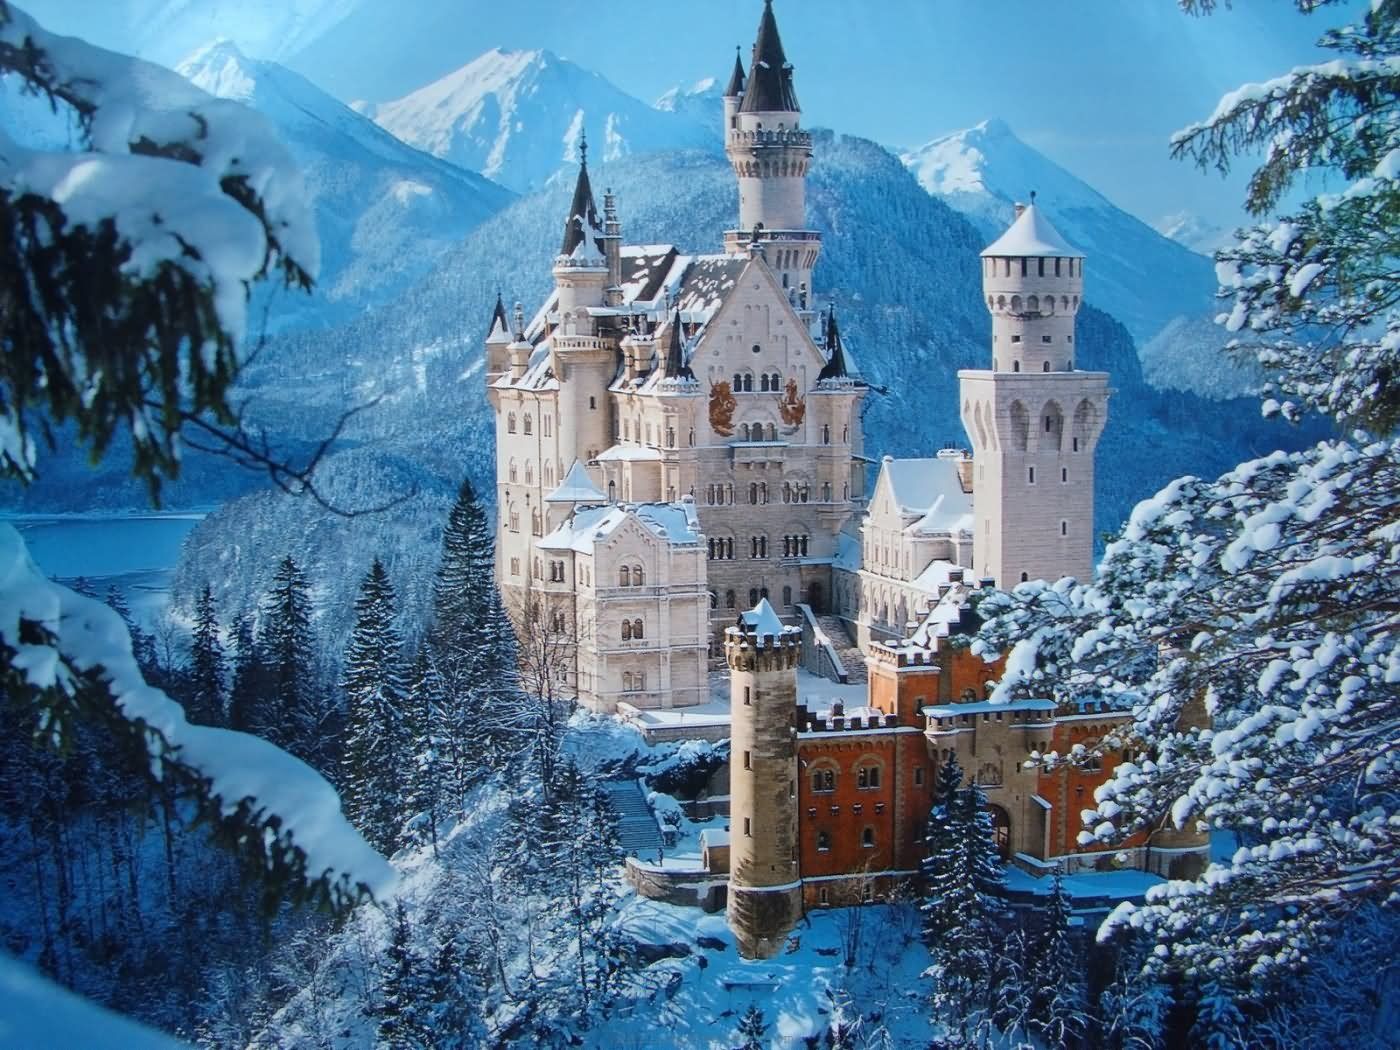 neuschwanstein-castle-during-winter-9183d10e53f6616aed740d861b4828b6.jpg